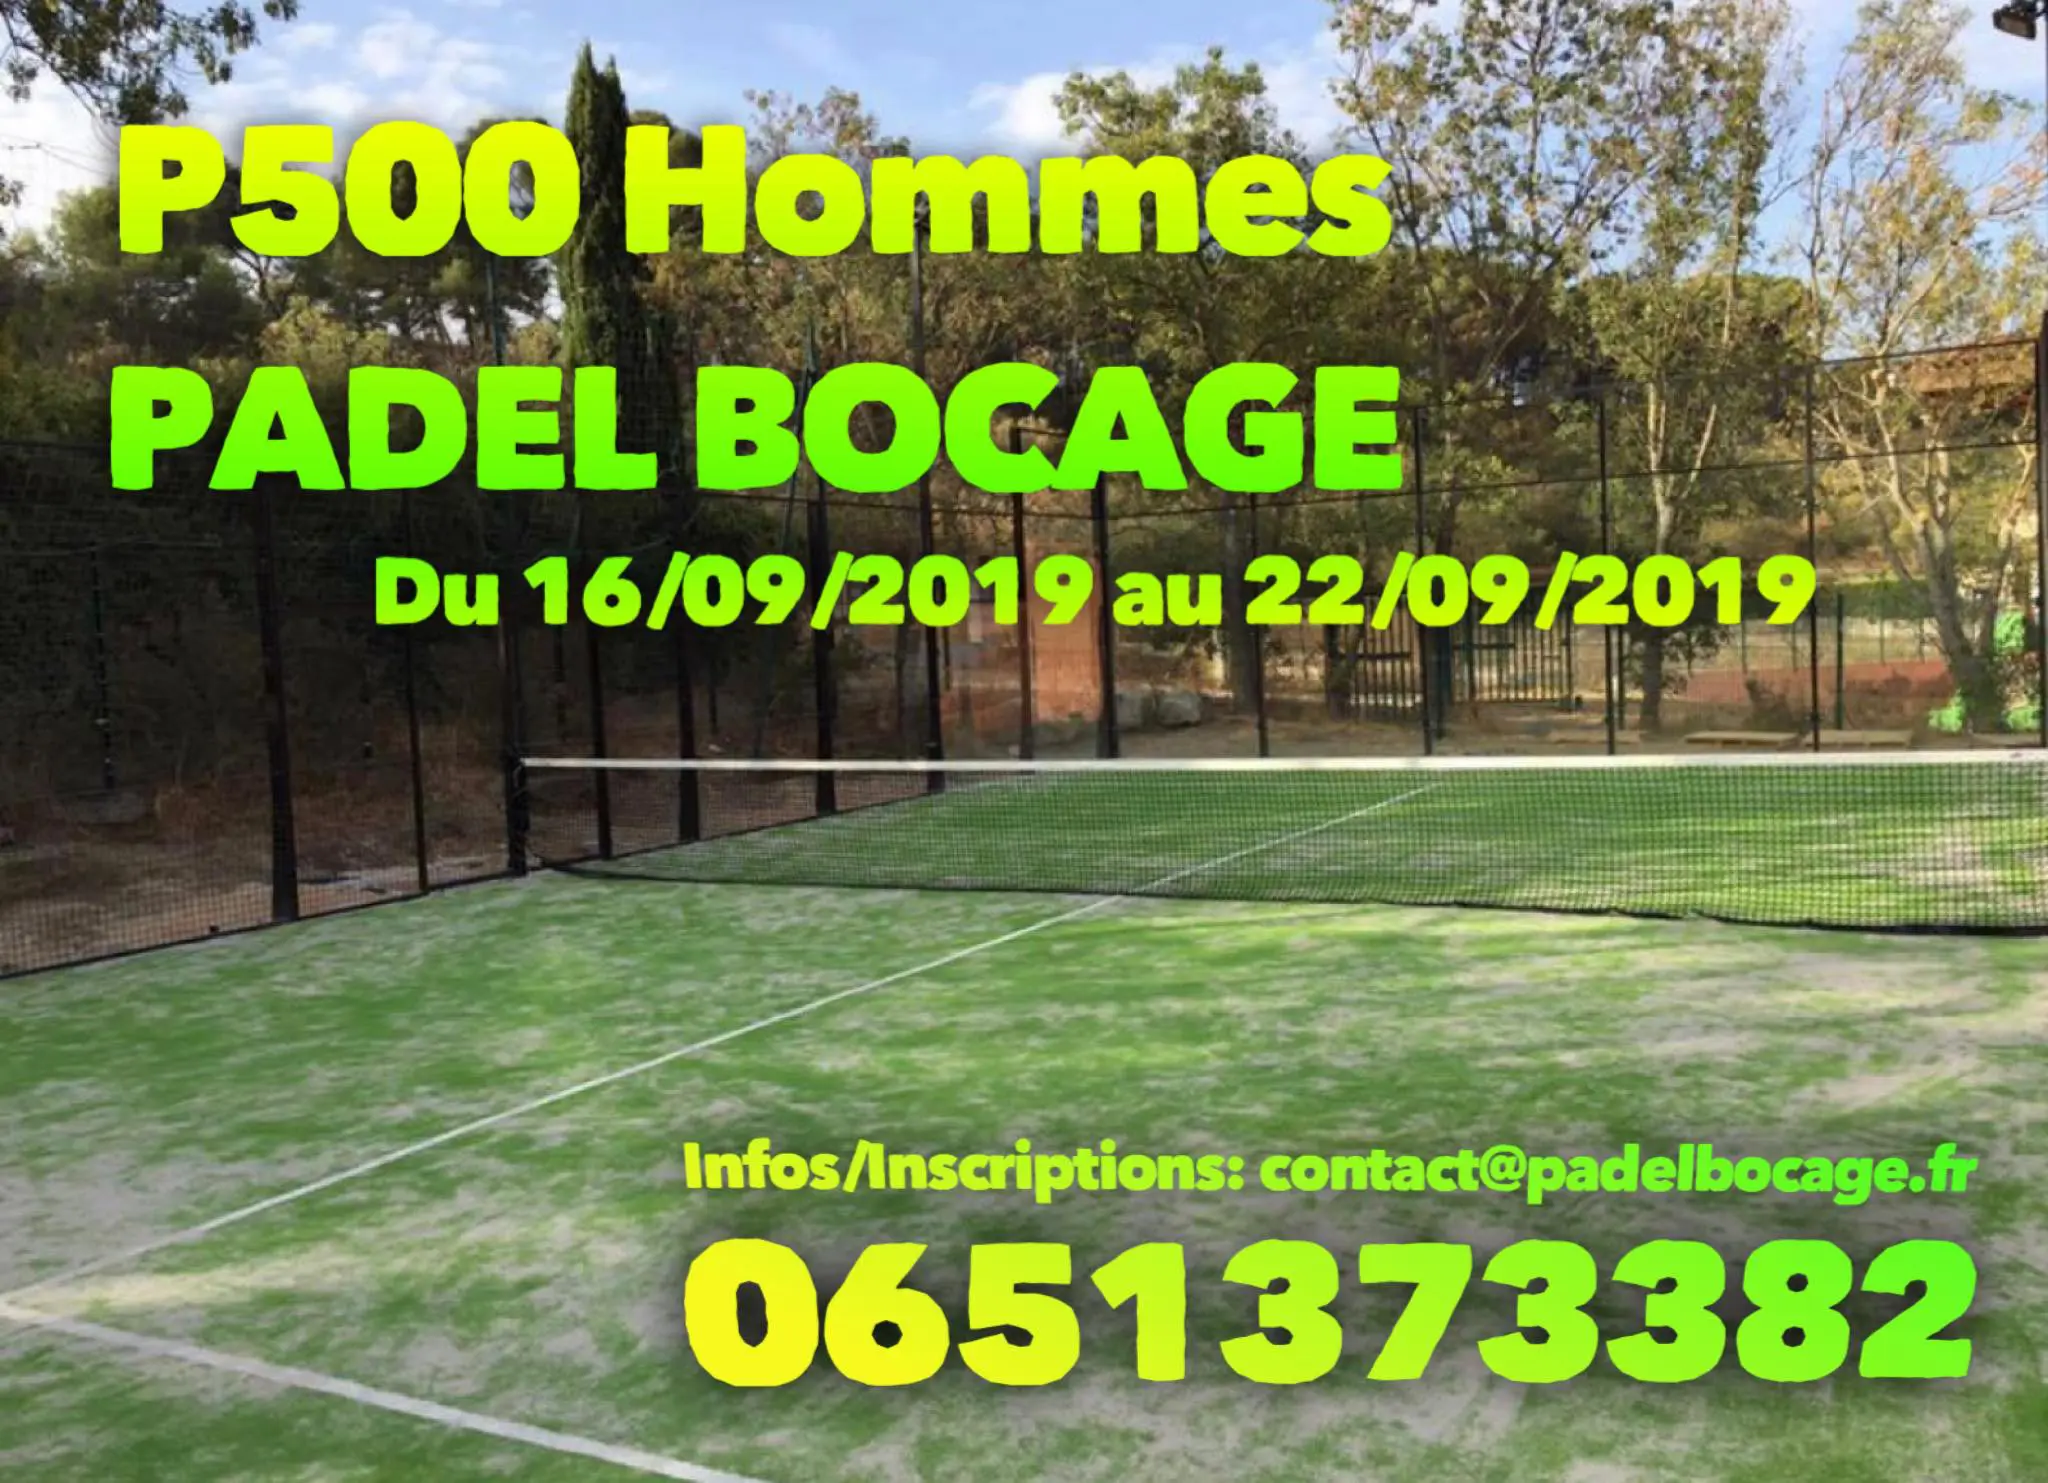 P500 - Padel Bocage - dal 16 al 22 settembre 2019